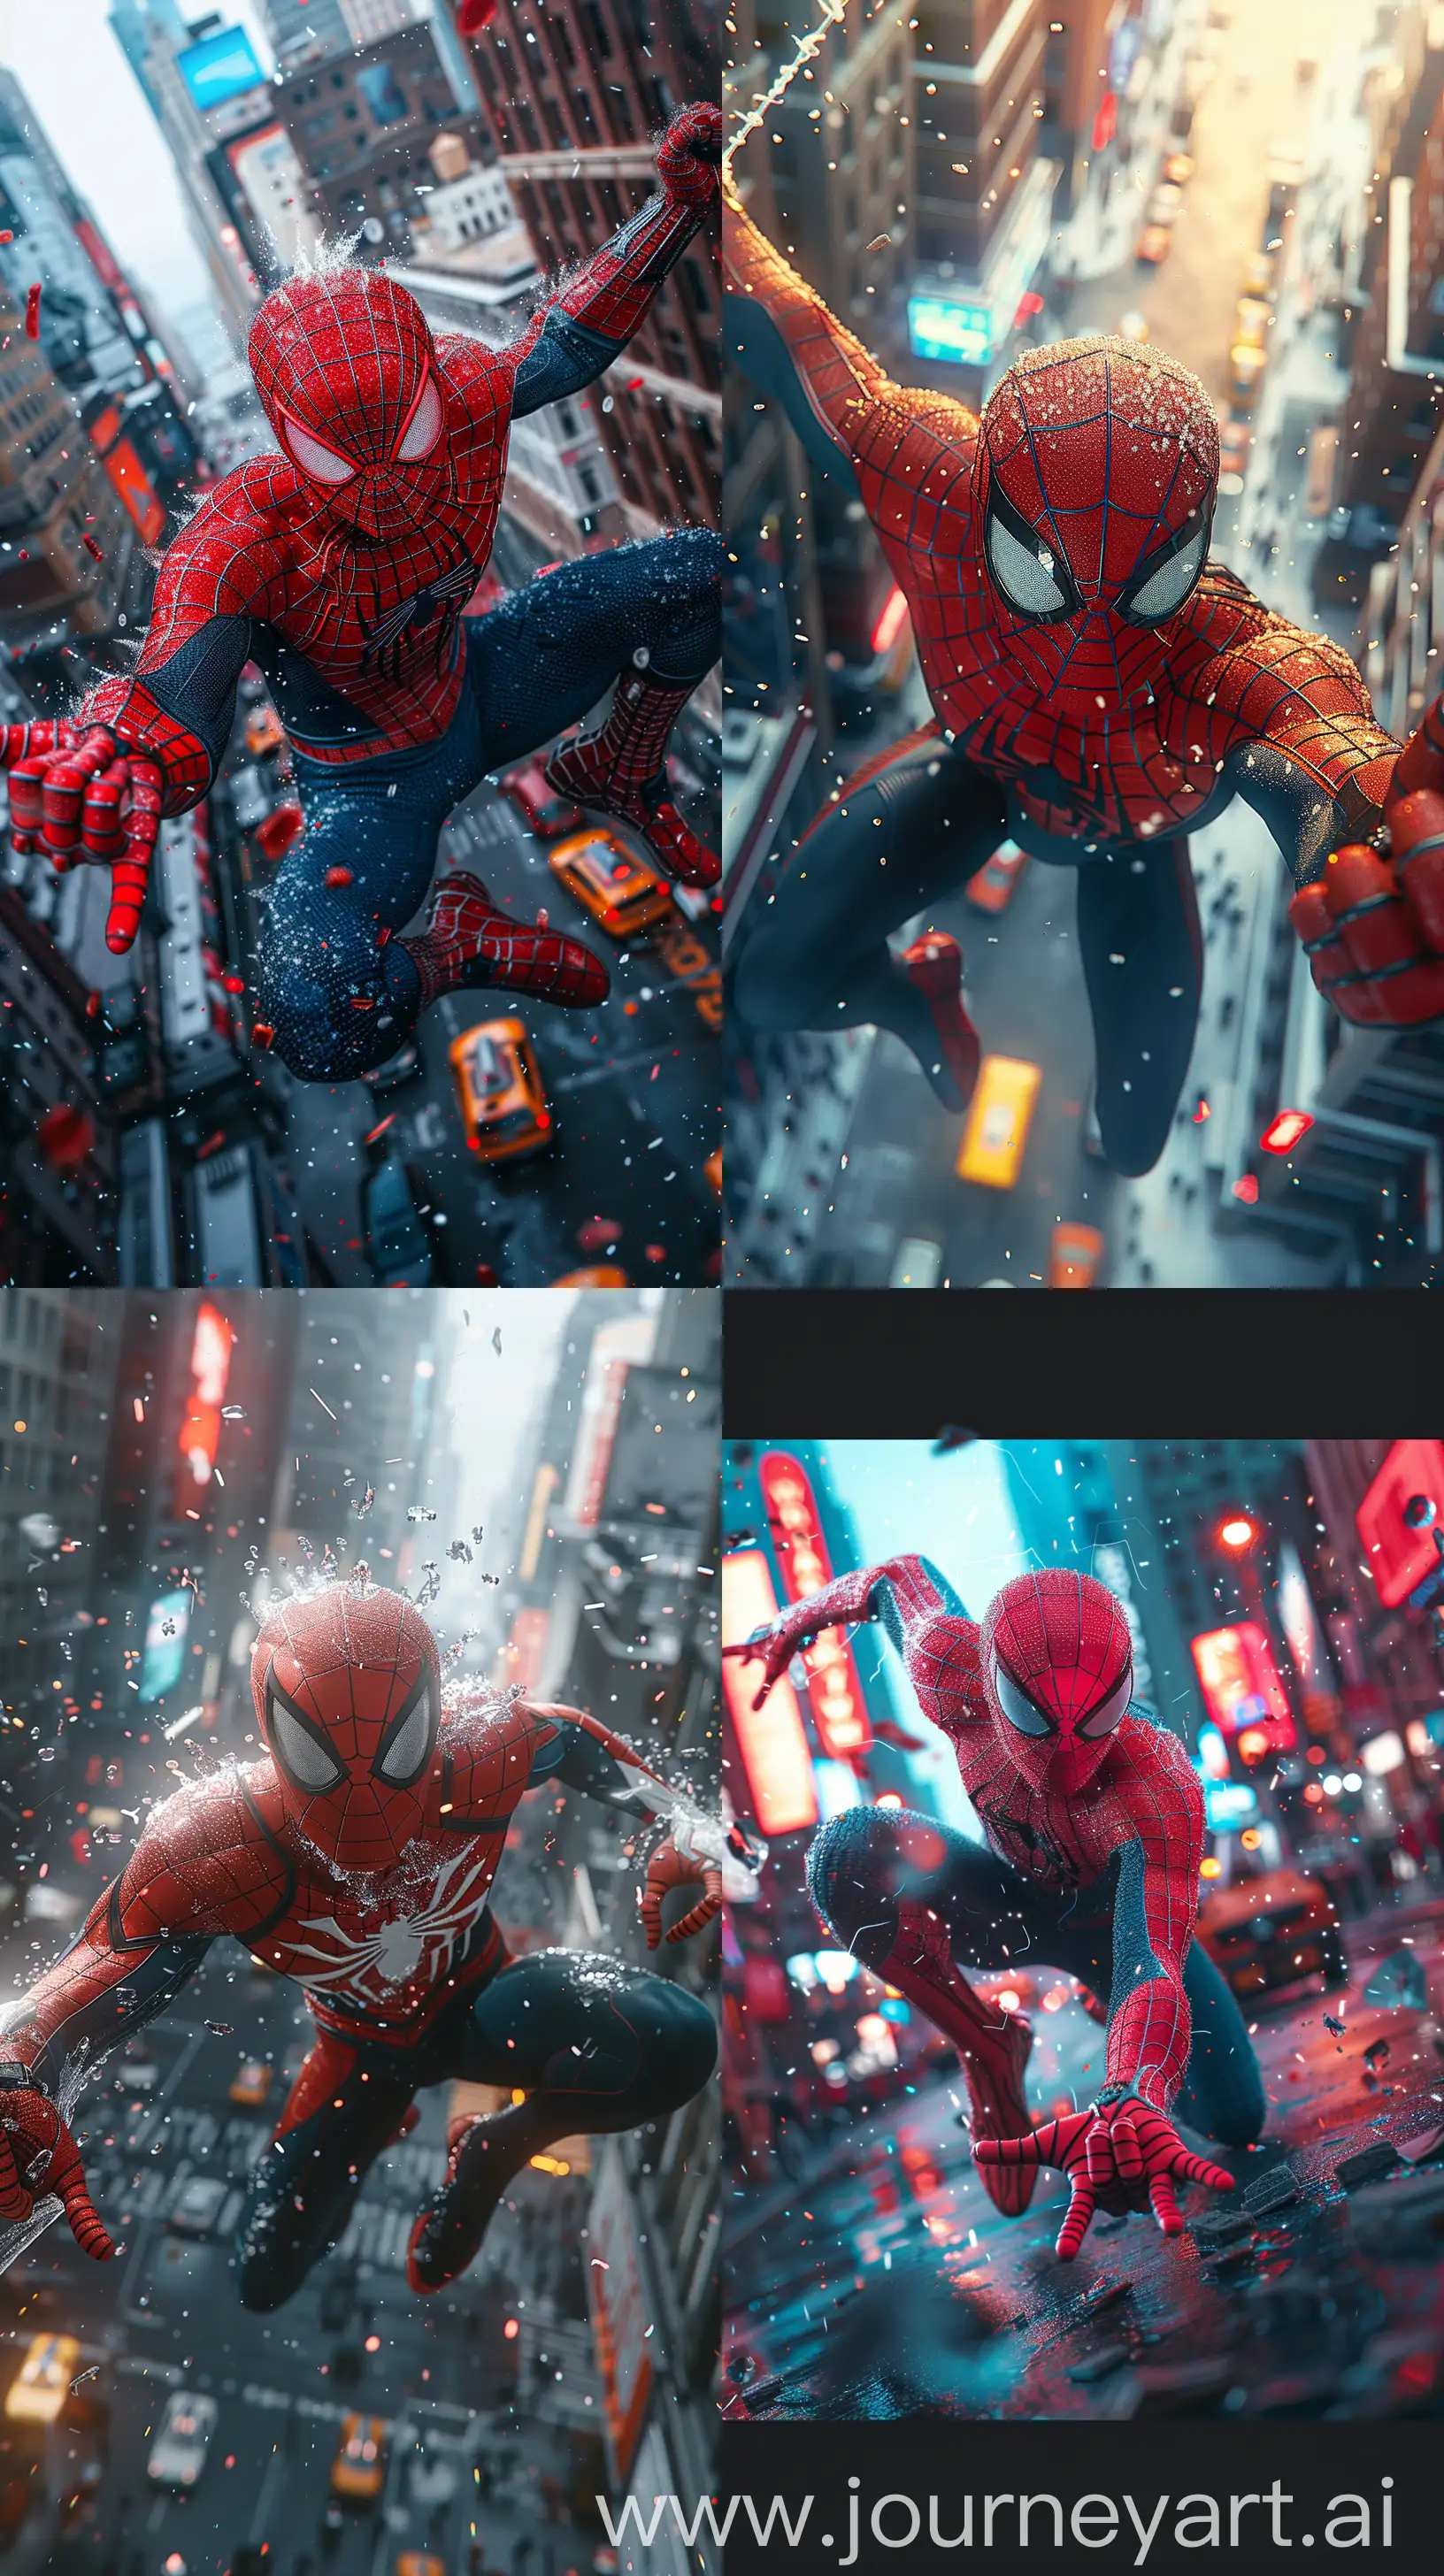 Futuristic-SpiderMan-2099-Bursting-Through-Screen-in-Vibrant-New-York-Cityscape